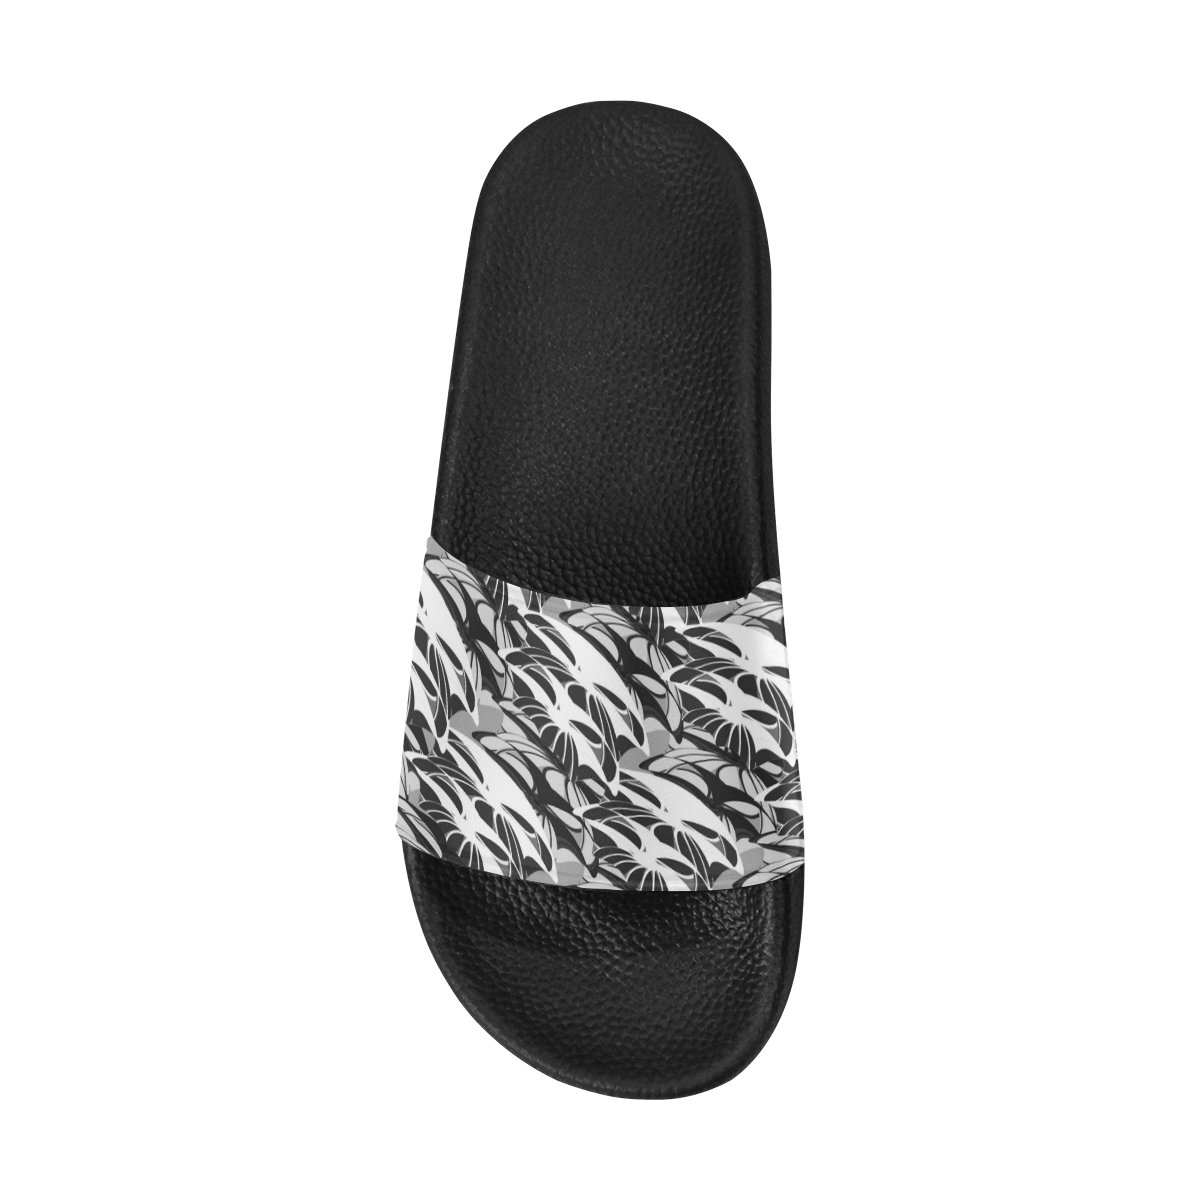 Alien Troops - Black & White Men's Slide Sandals (Model 057)